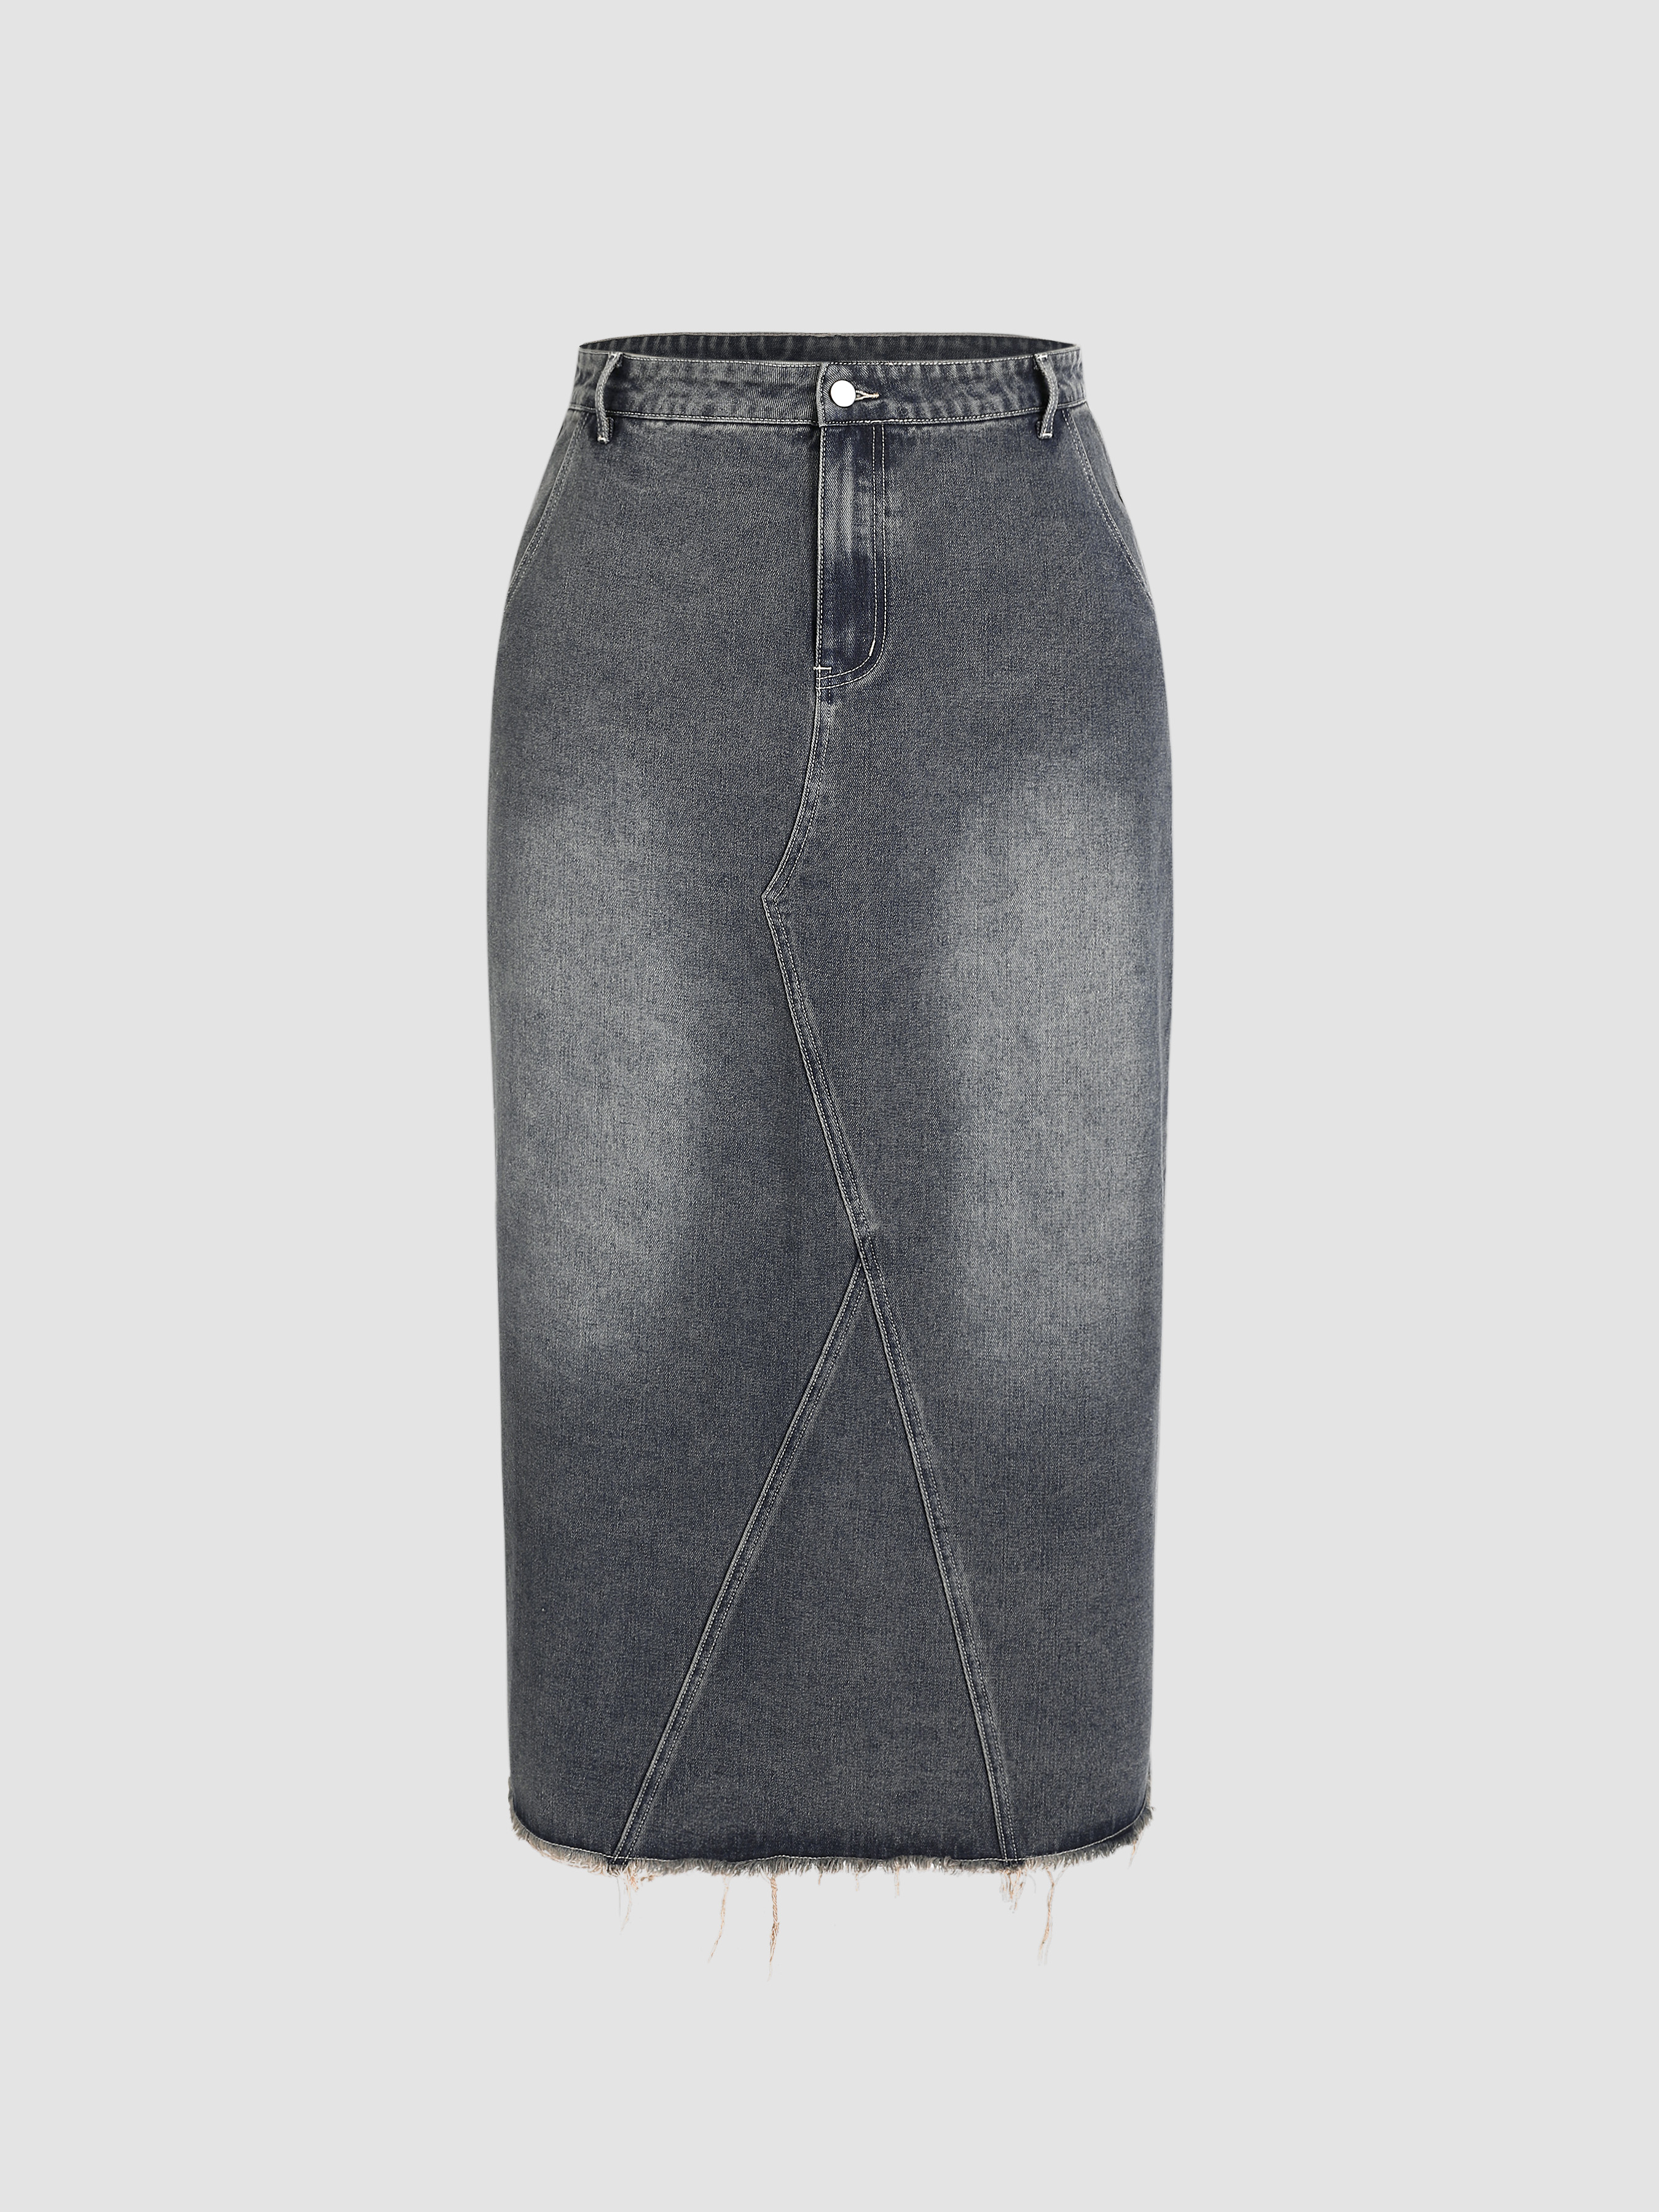 HAN KJØBENHAVN | Grey Women's Denim Skirt | YOOX